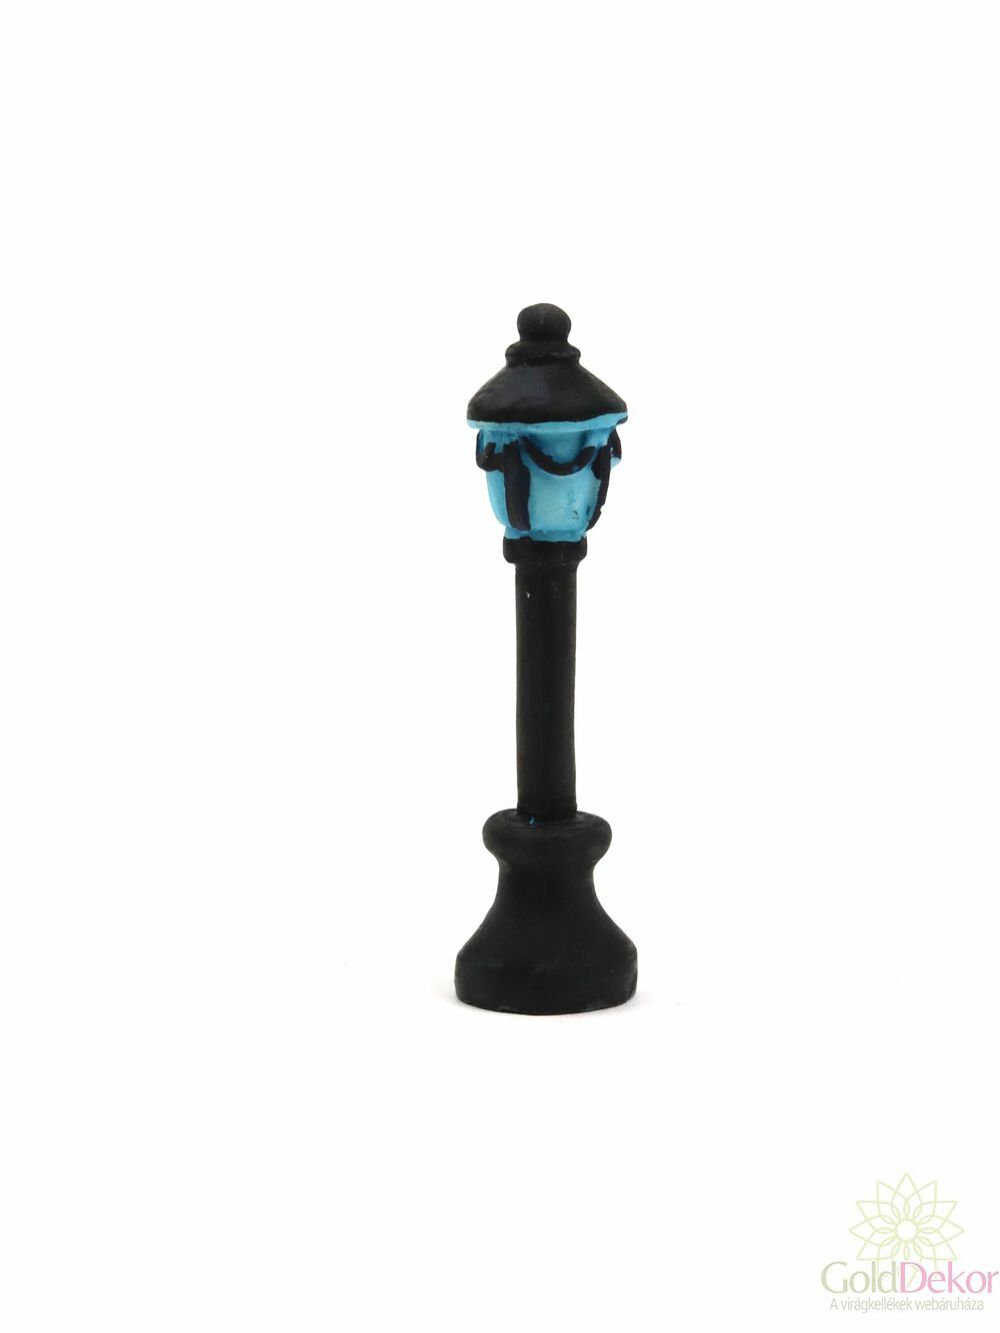 Villanyoszlop szimpla lámpás - Kék